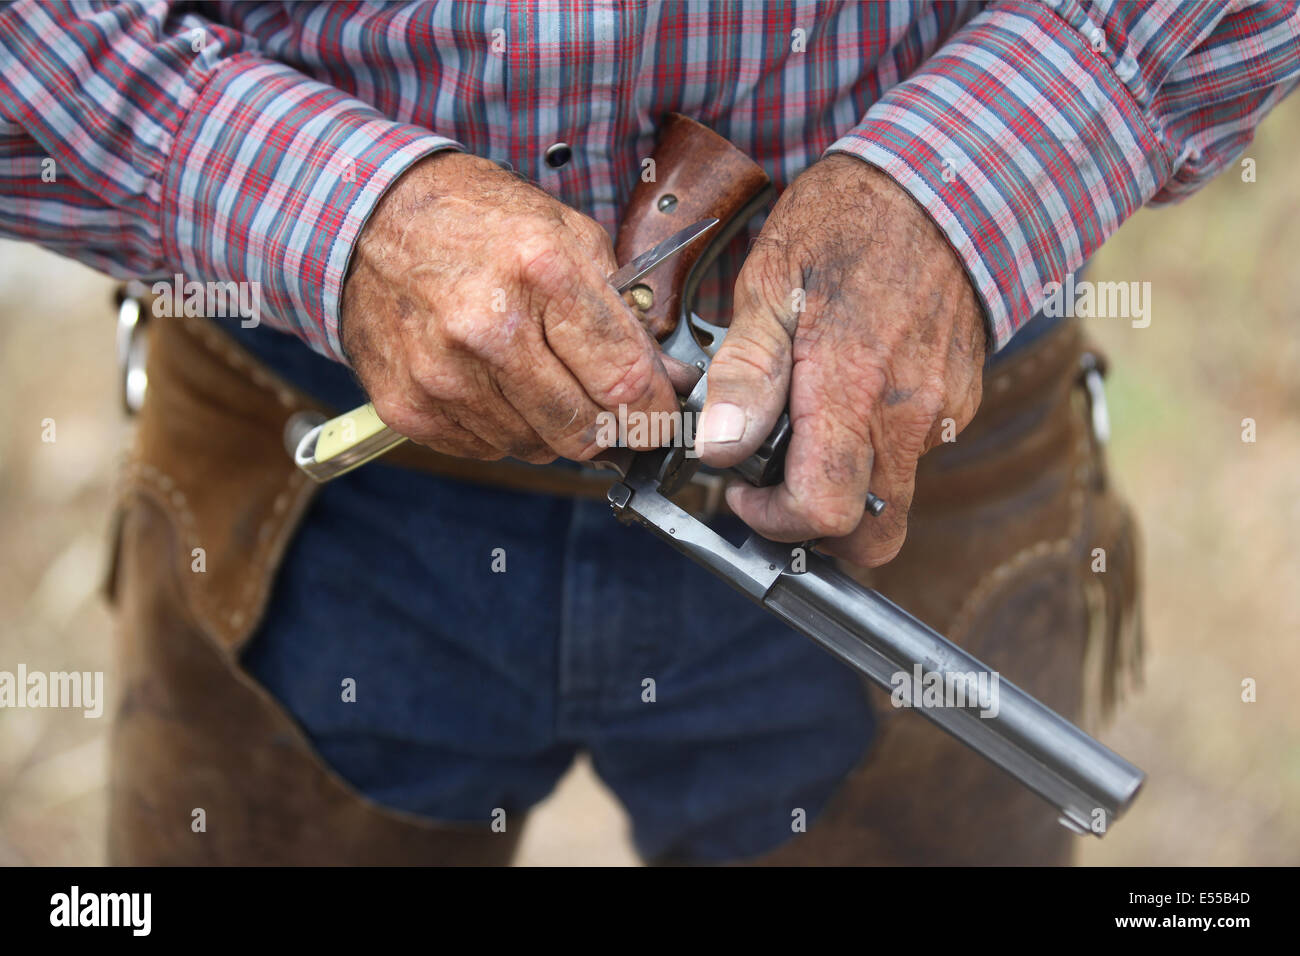 Cowboy americano trabajando en su pistola, cerrar Foto de stock